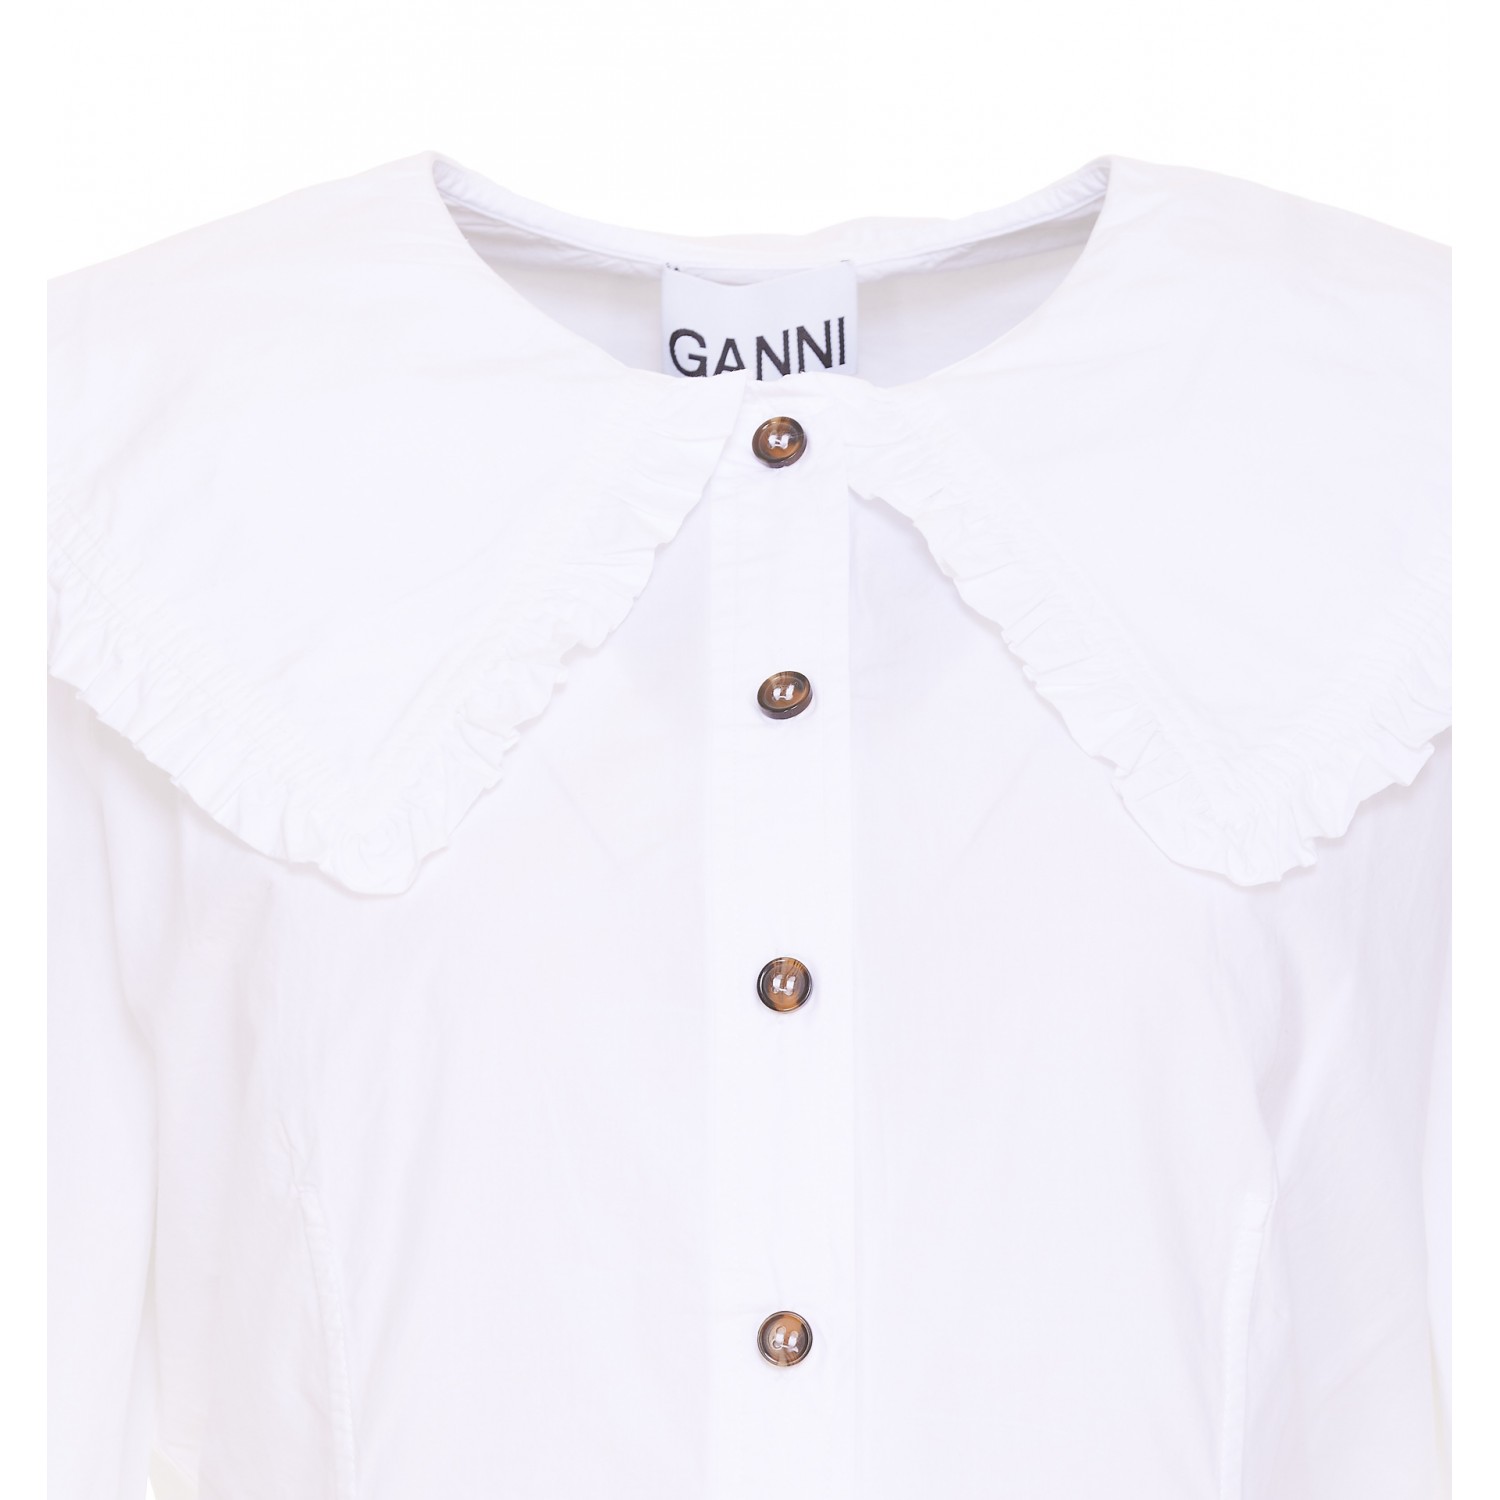 Peter Pan collar long-sleeve shirt, Ganni